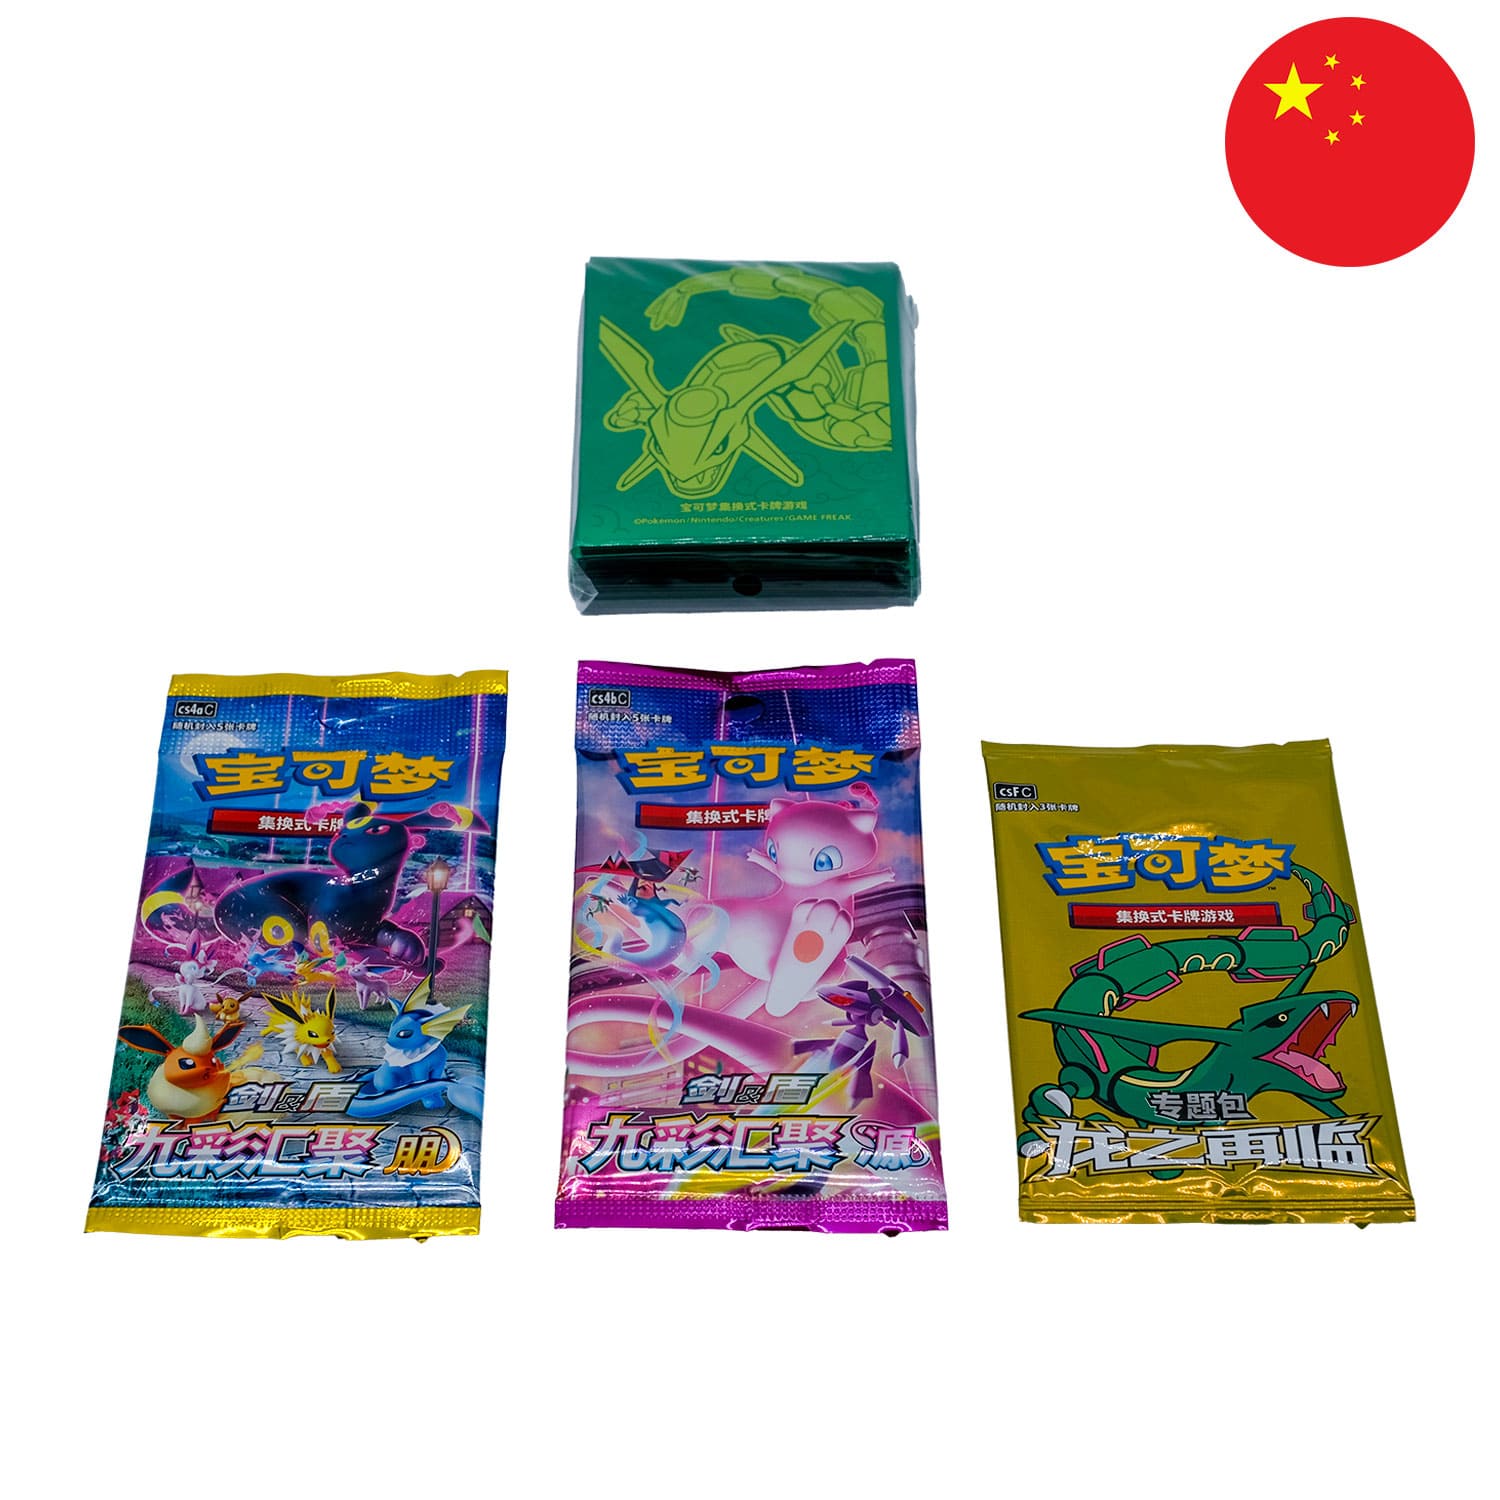 Inhalt der Rayquaza Sleeve Box, 3 verschiedene Boosterpacks & die Sleeves angeordnet mit der Flagge Chinas in der Ecke.